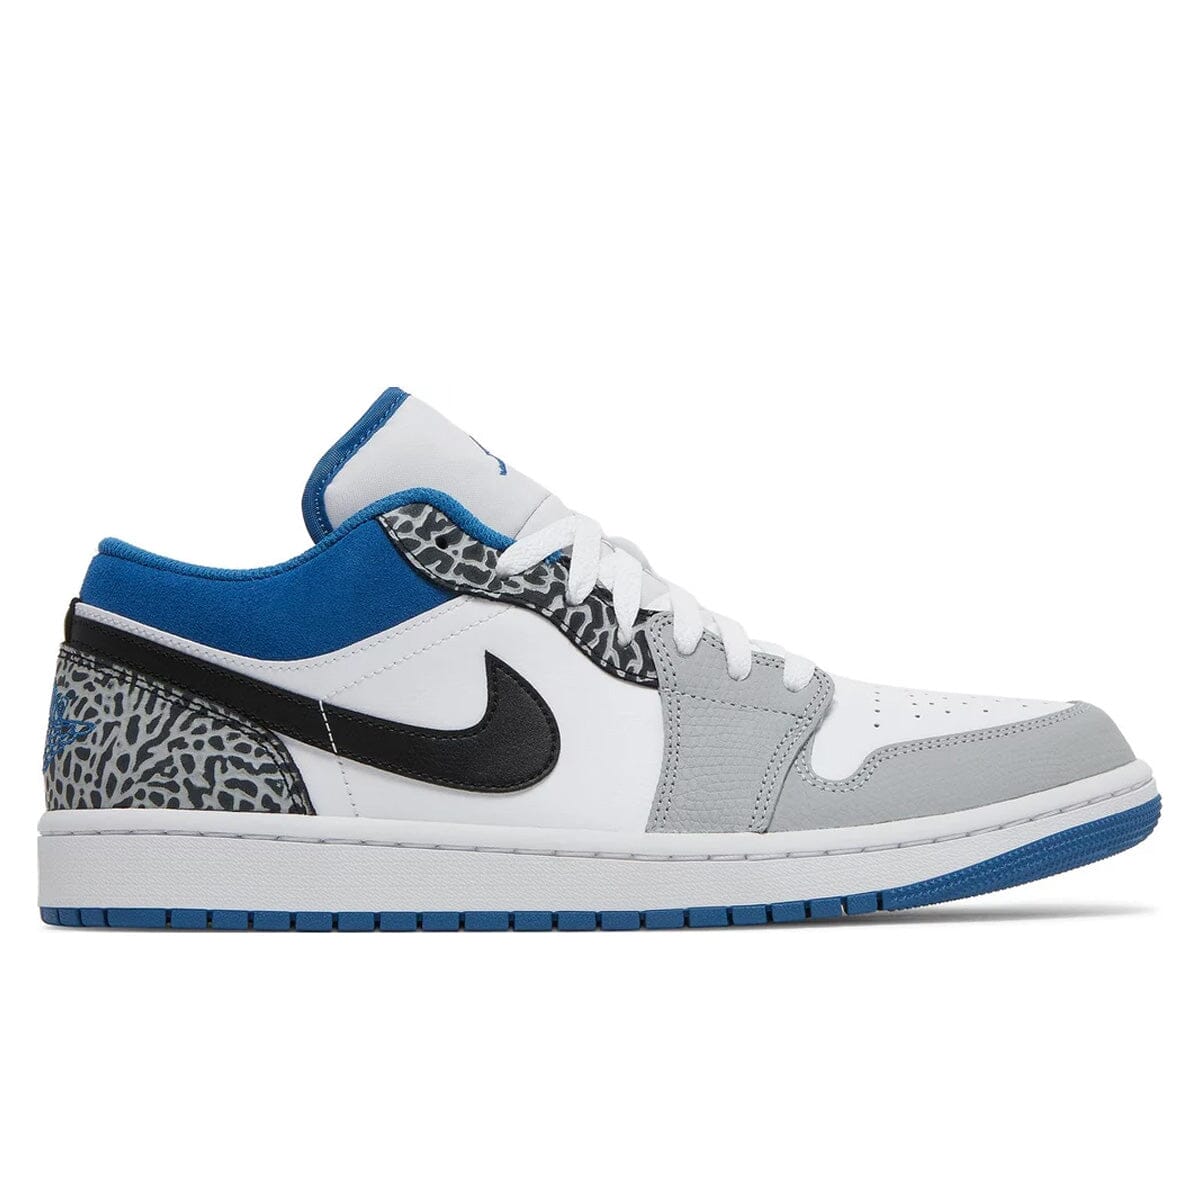 Air Jordan 1 Low True Blue Air Jordan 1 Low Blizz Sneakers 